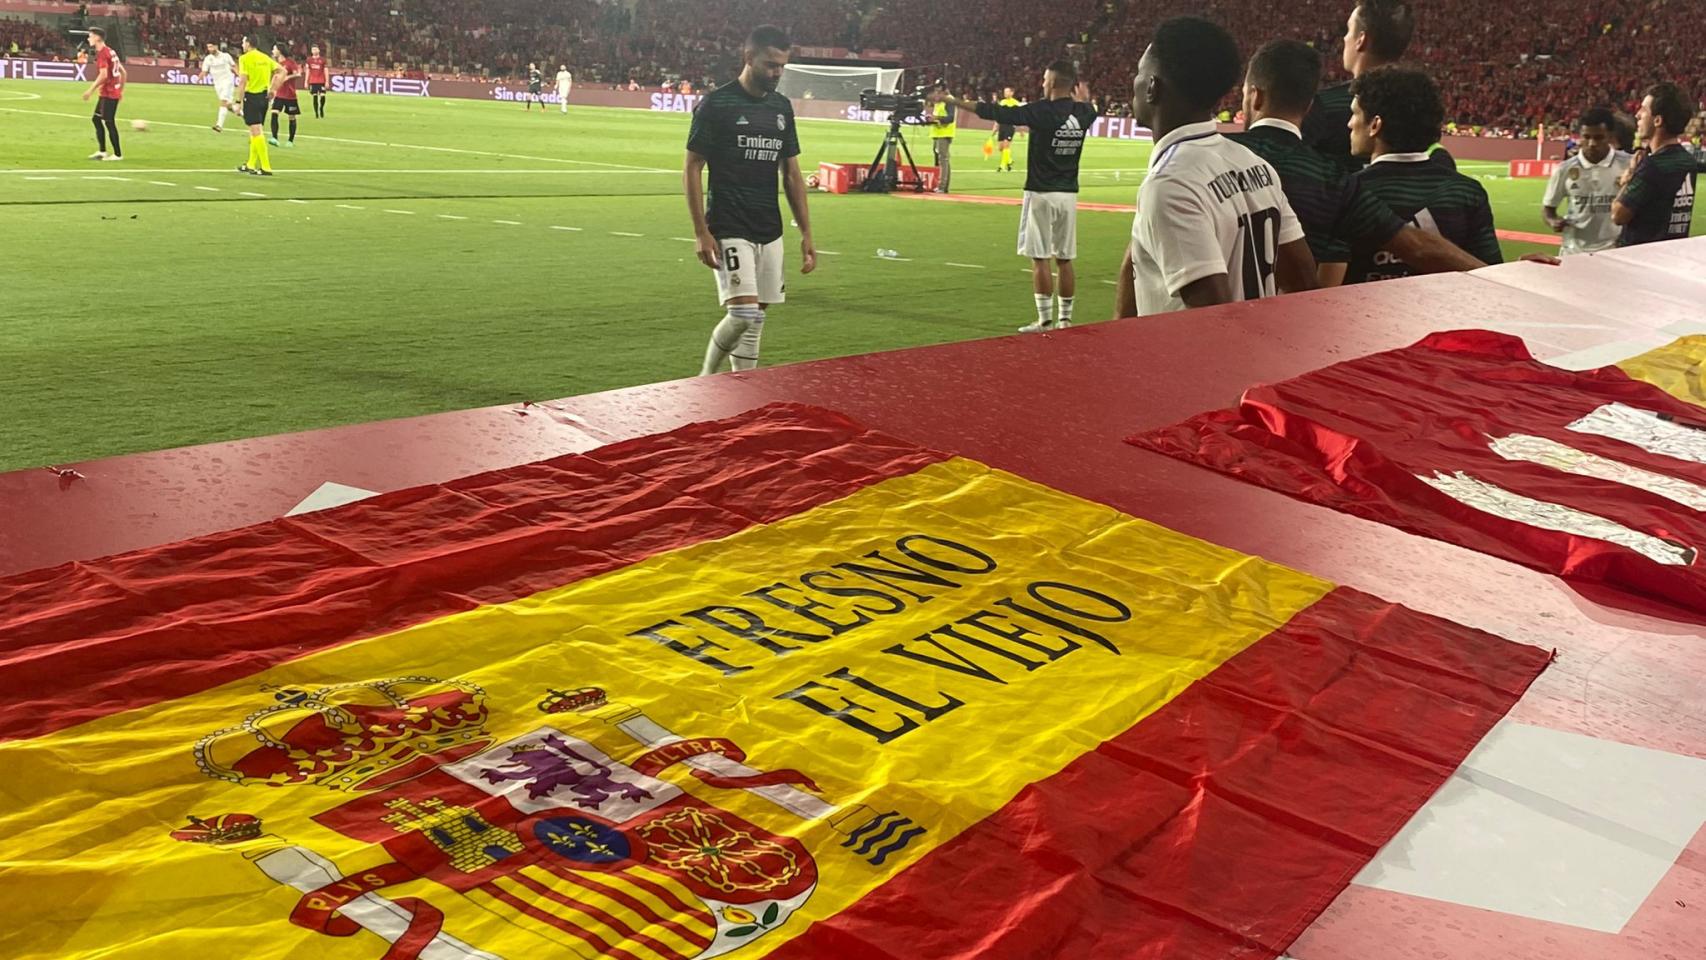 La bandera de Fresno el Viejo en el banquillo del Real Madrid